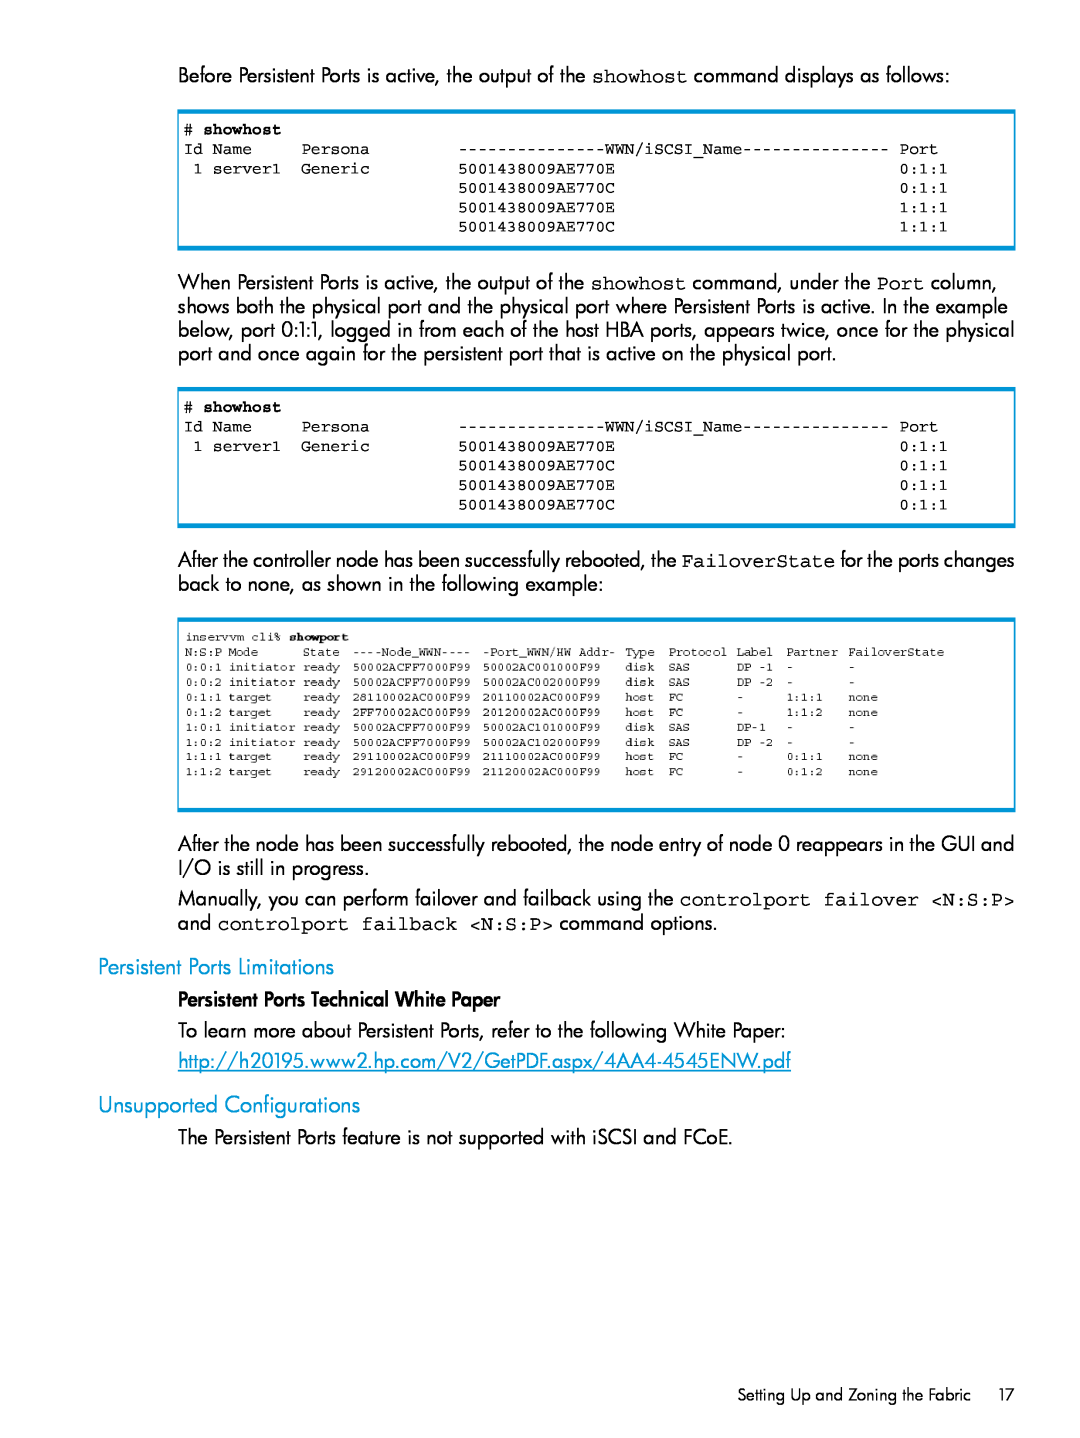 HP QR516B manual Persistent Ports Limitations, Unsupported Configurations 